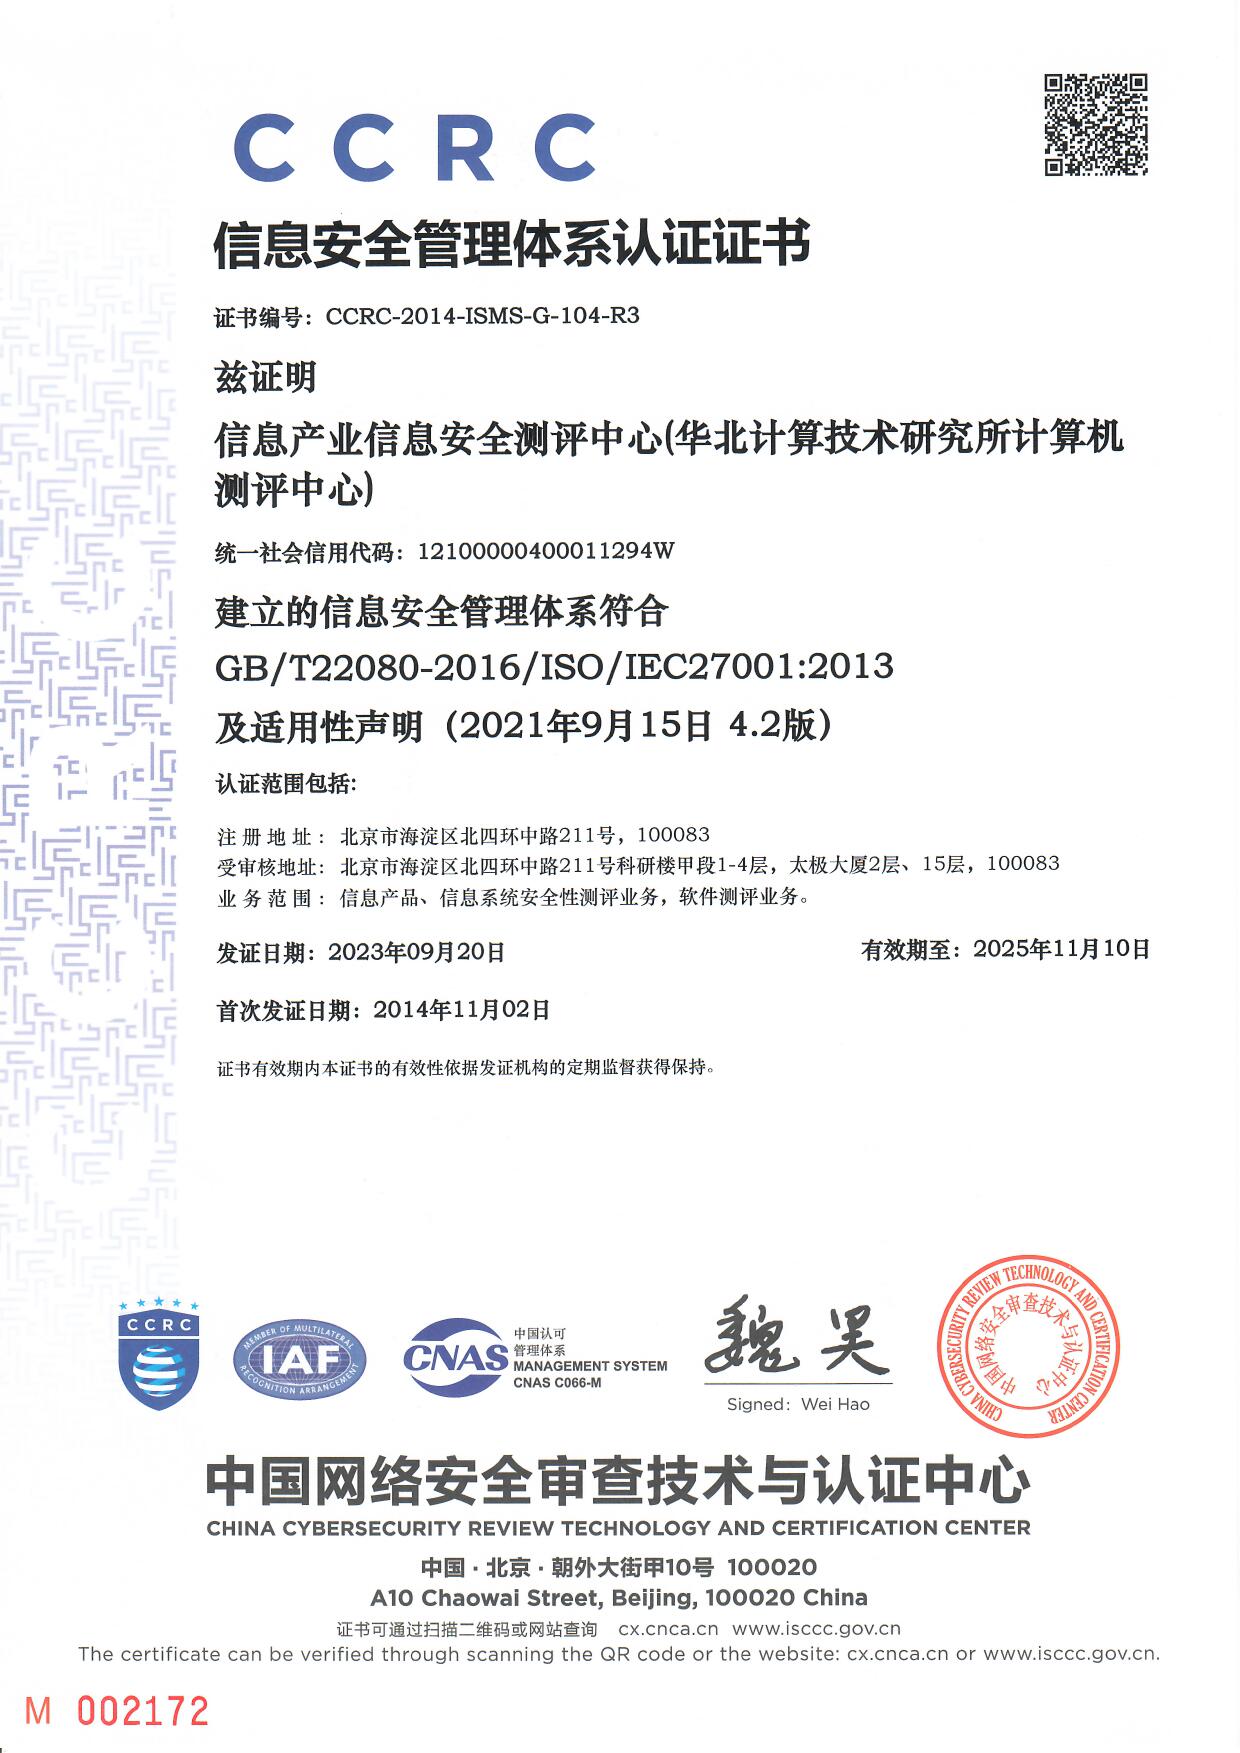 信息安全管理体系认证证书(中文)(No.CCRC-2014-ISMS-G-104-R2)